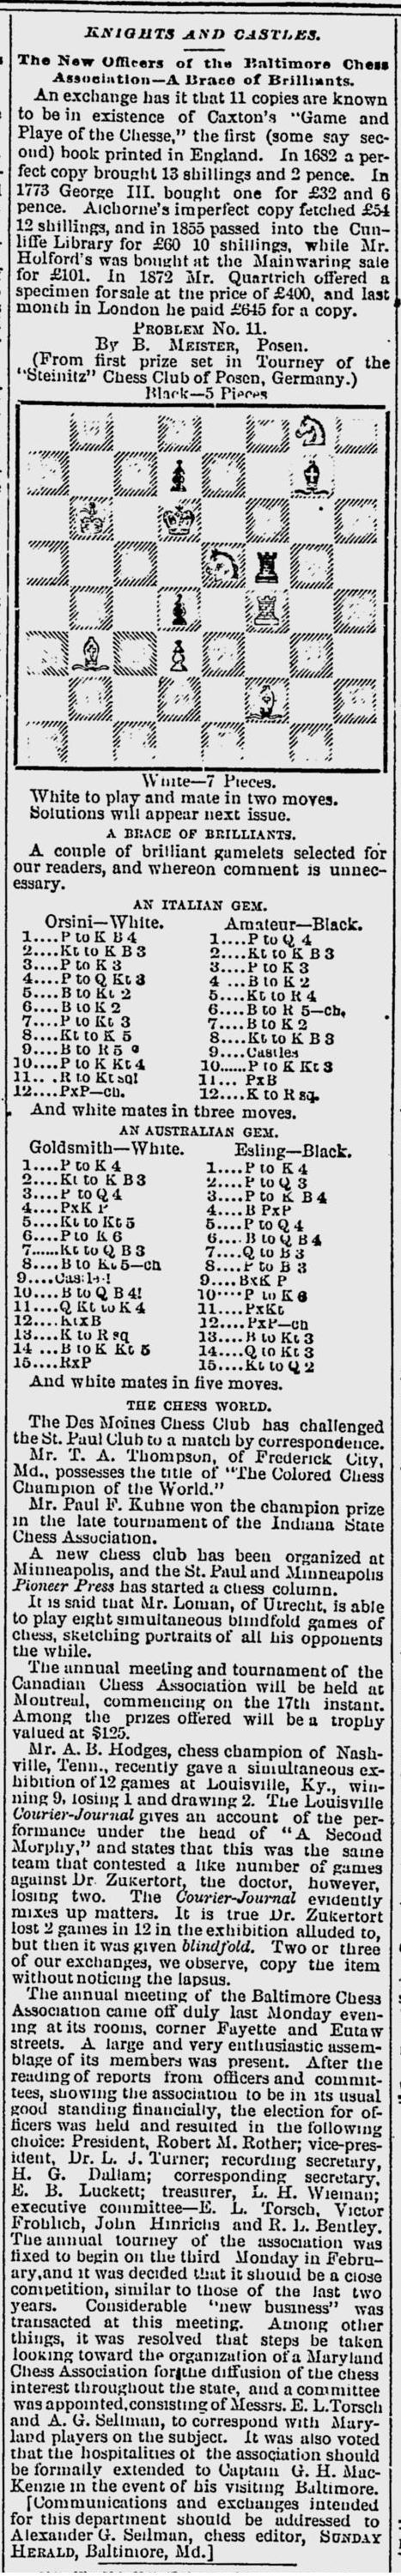 1887.01.16-01 Baltimore Sunday Herald.jpg